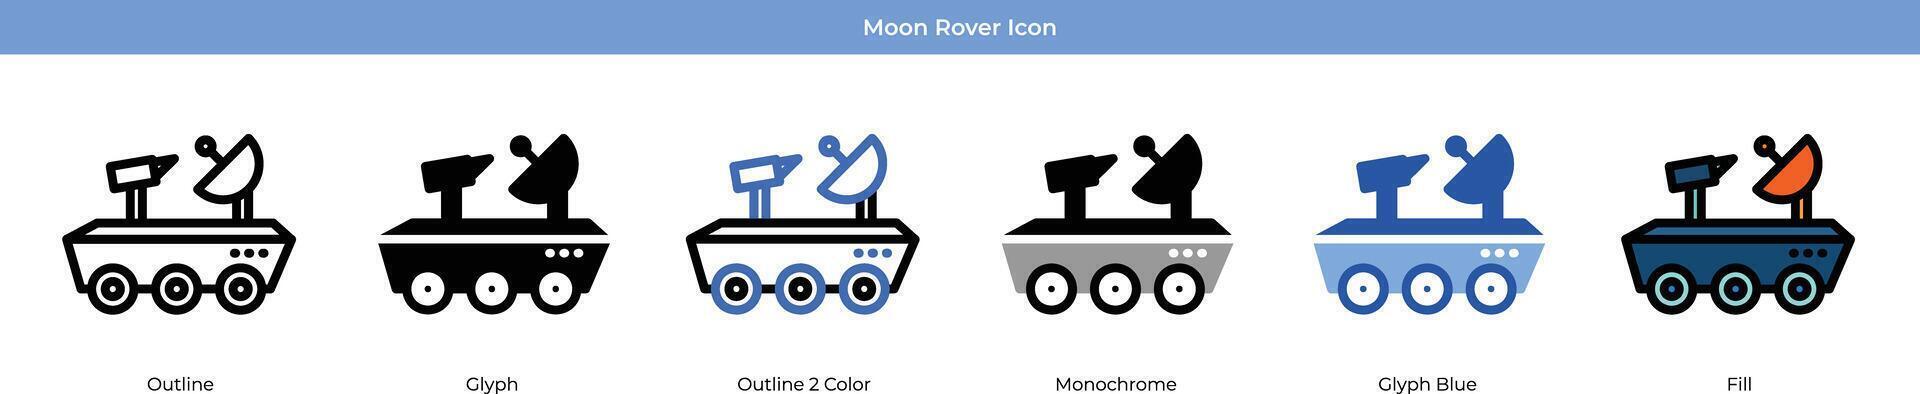 Mond Rover Symbol einstellen vektor